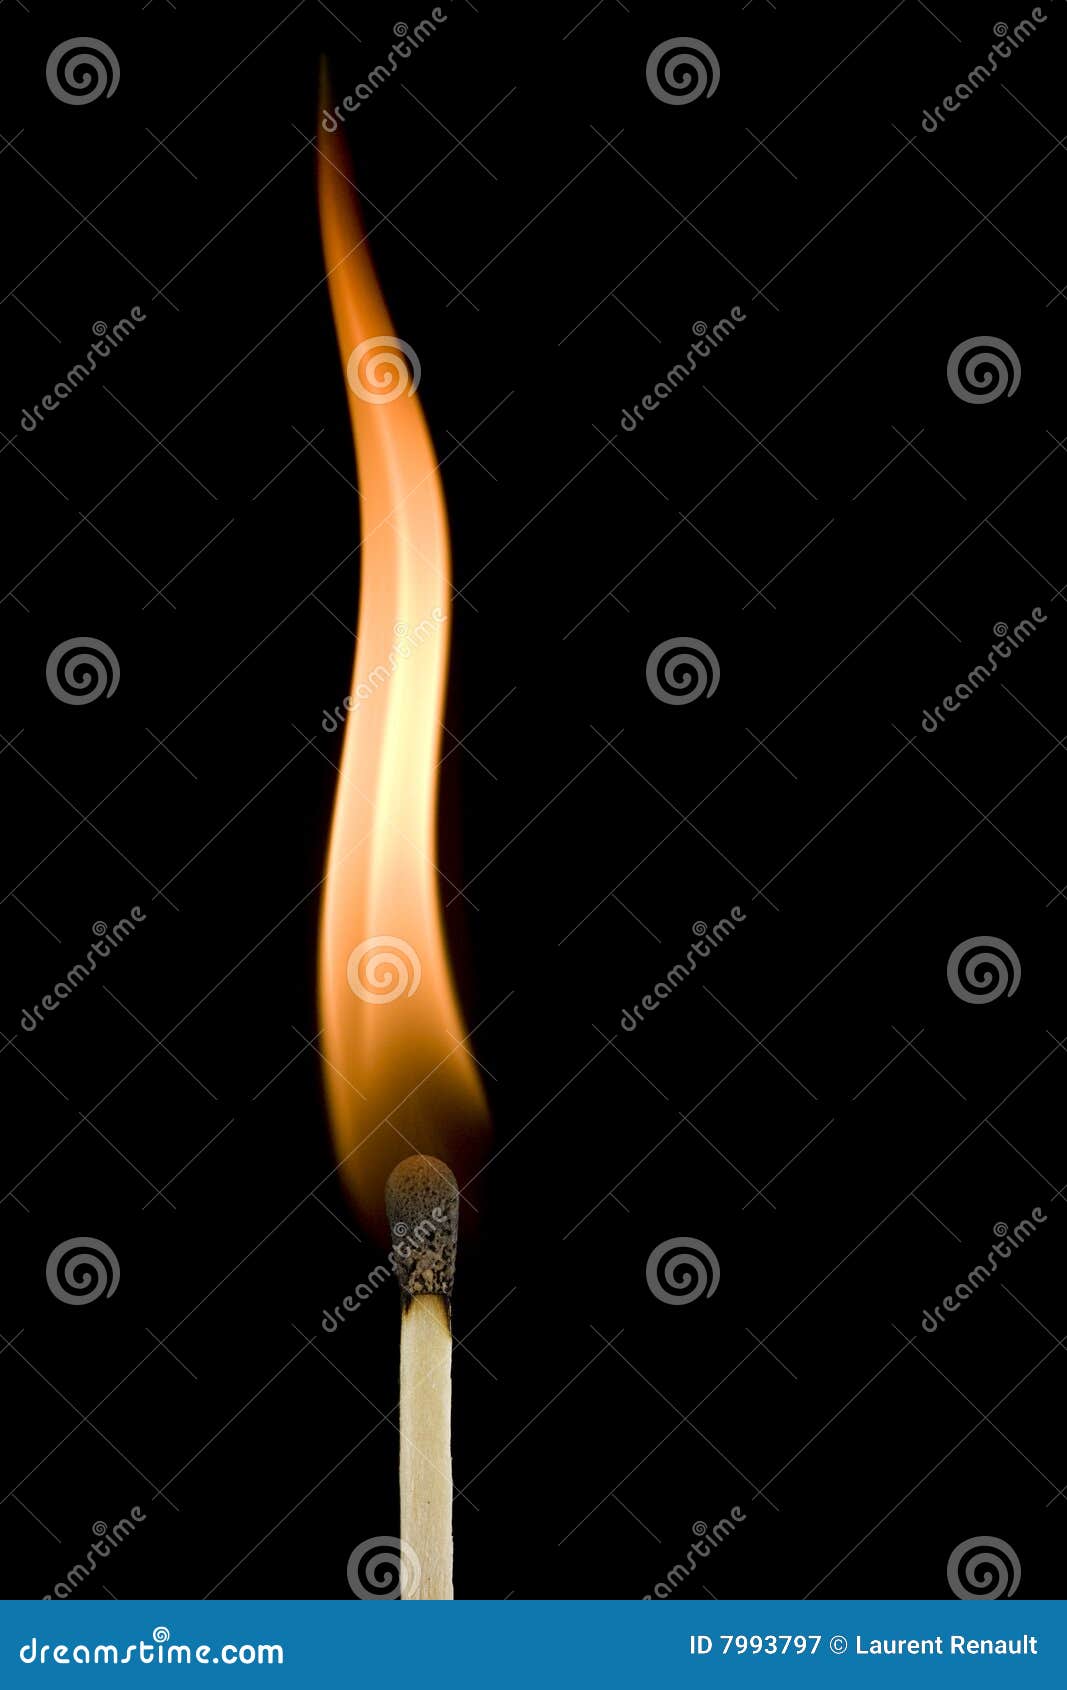 burning matchstick flame